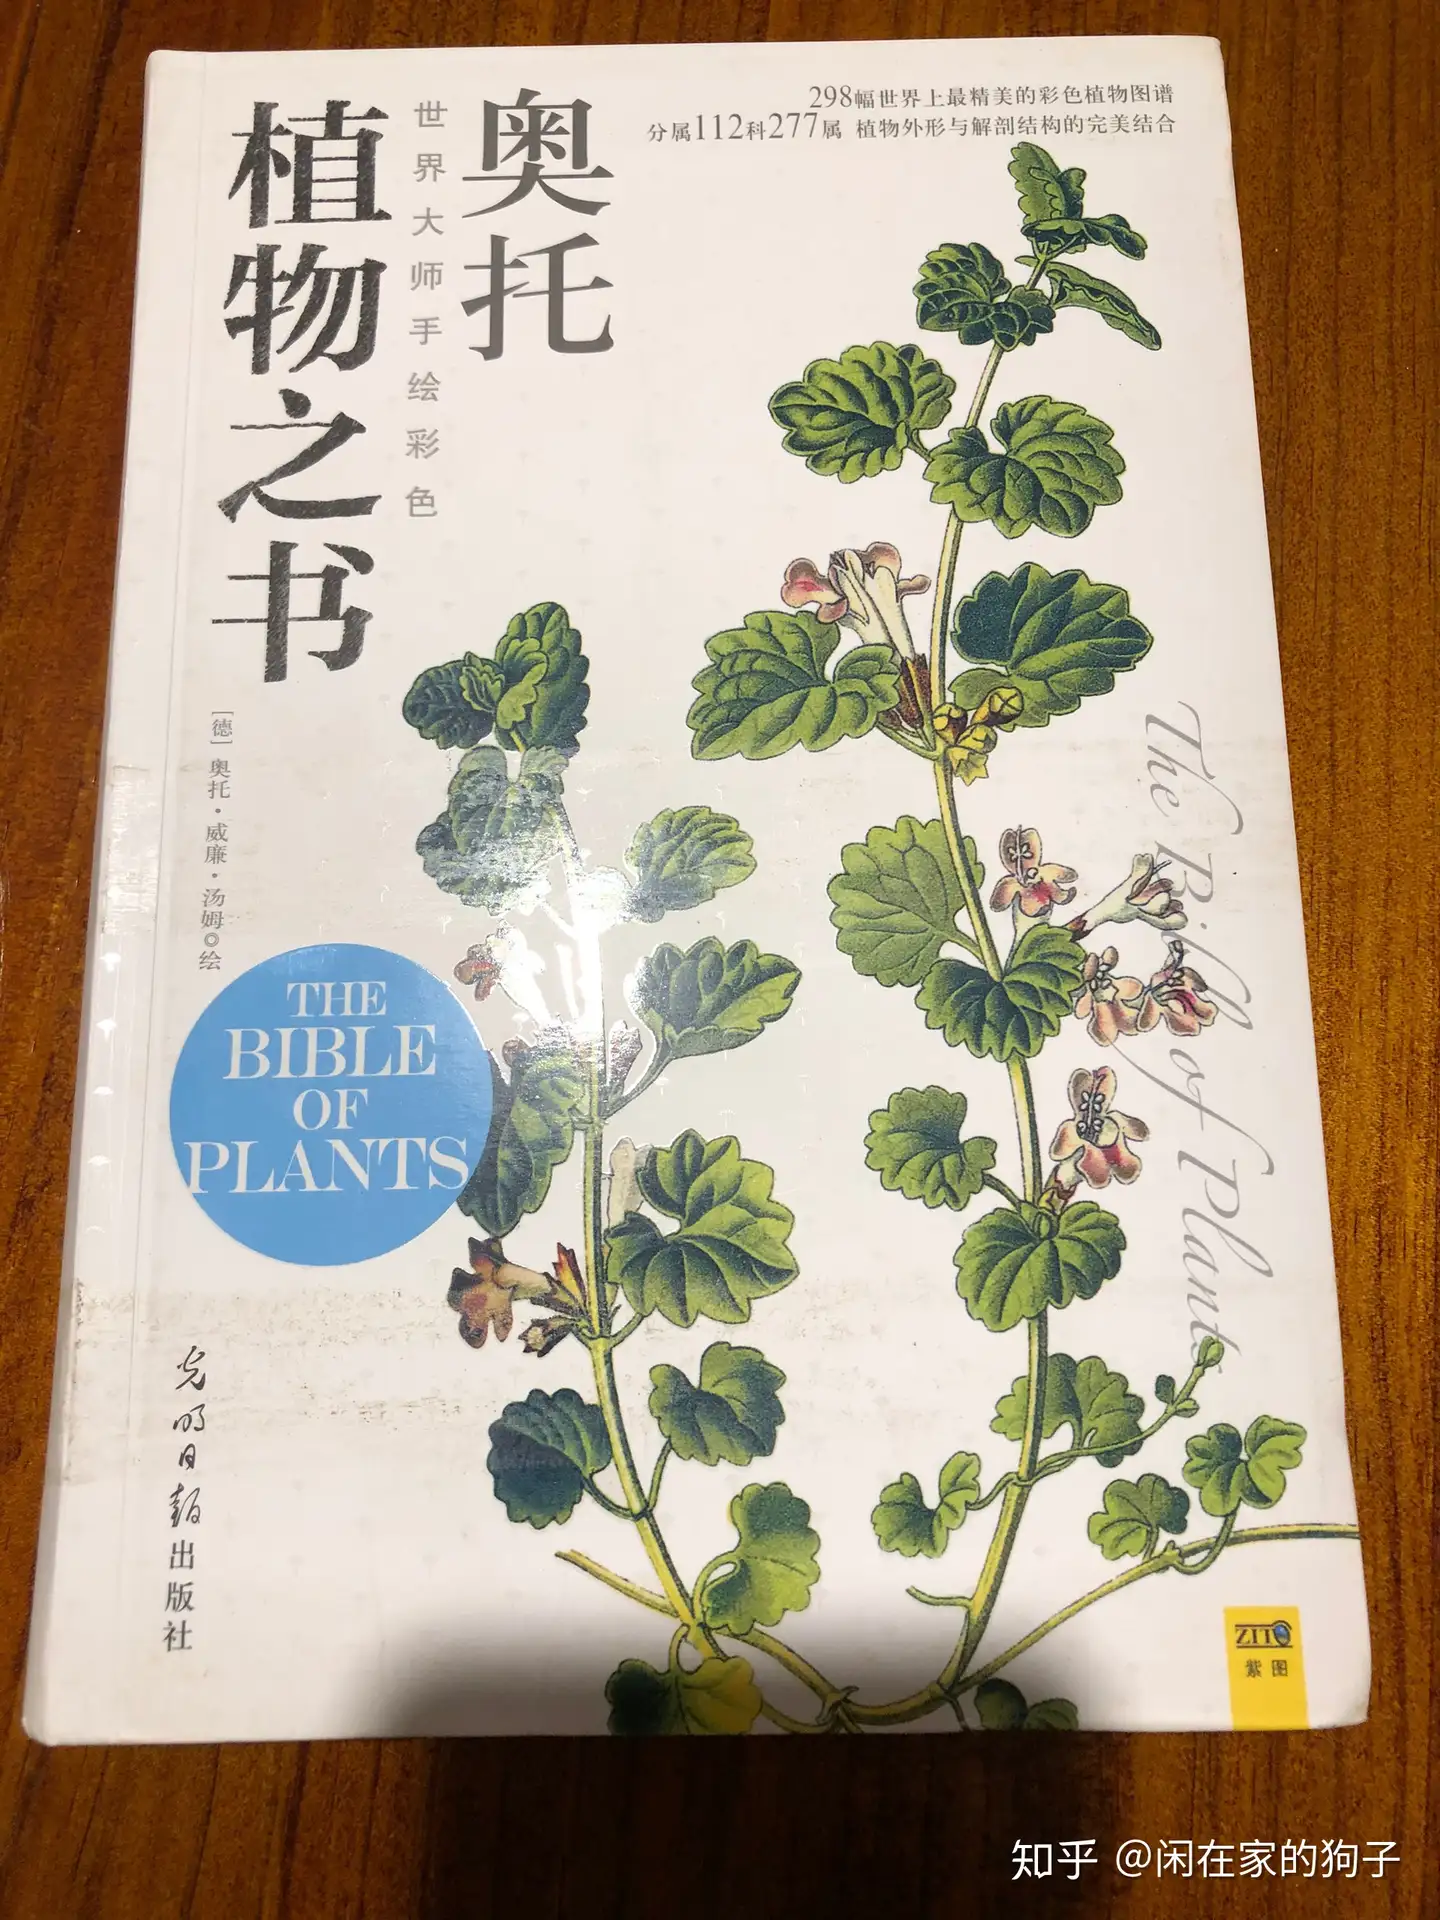 有哪些关于植物学的书籍可以推荐？ - 知乎